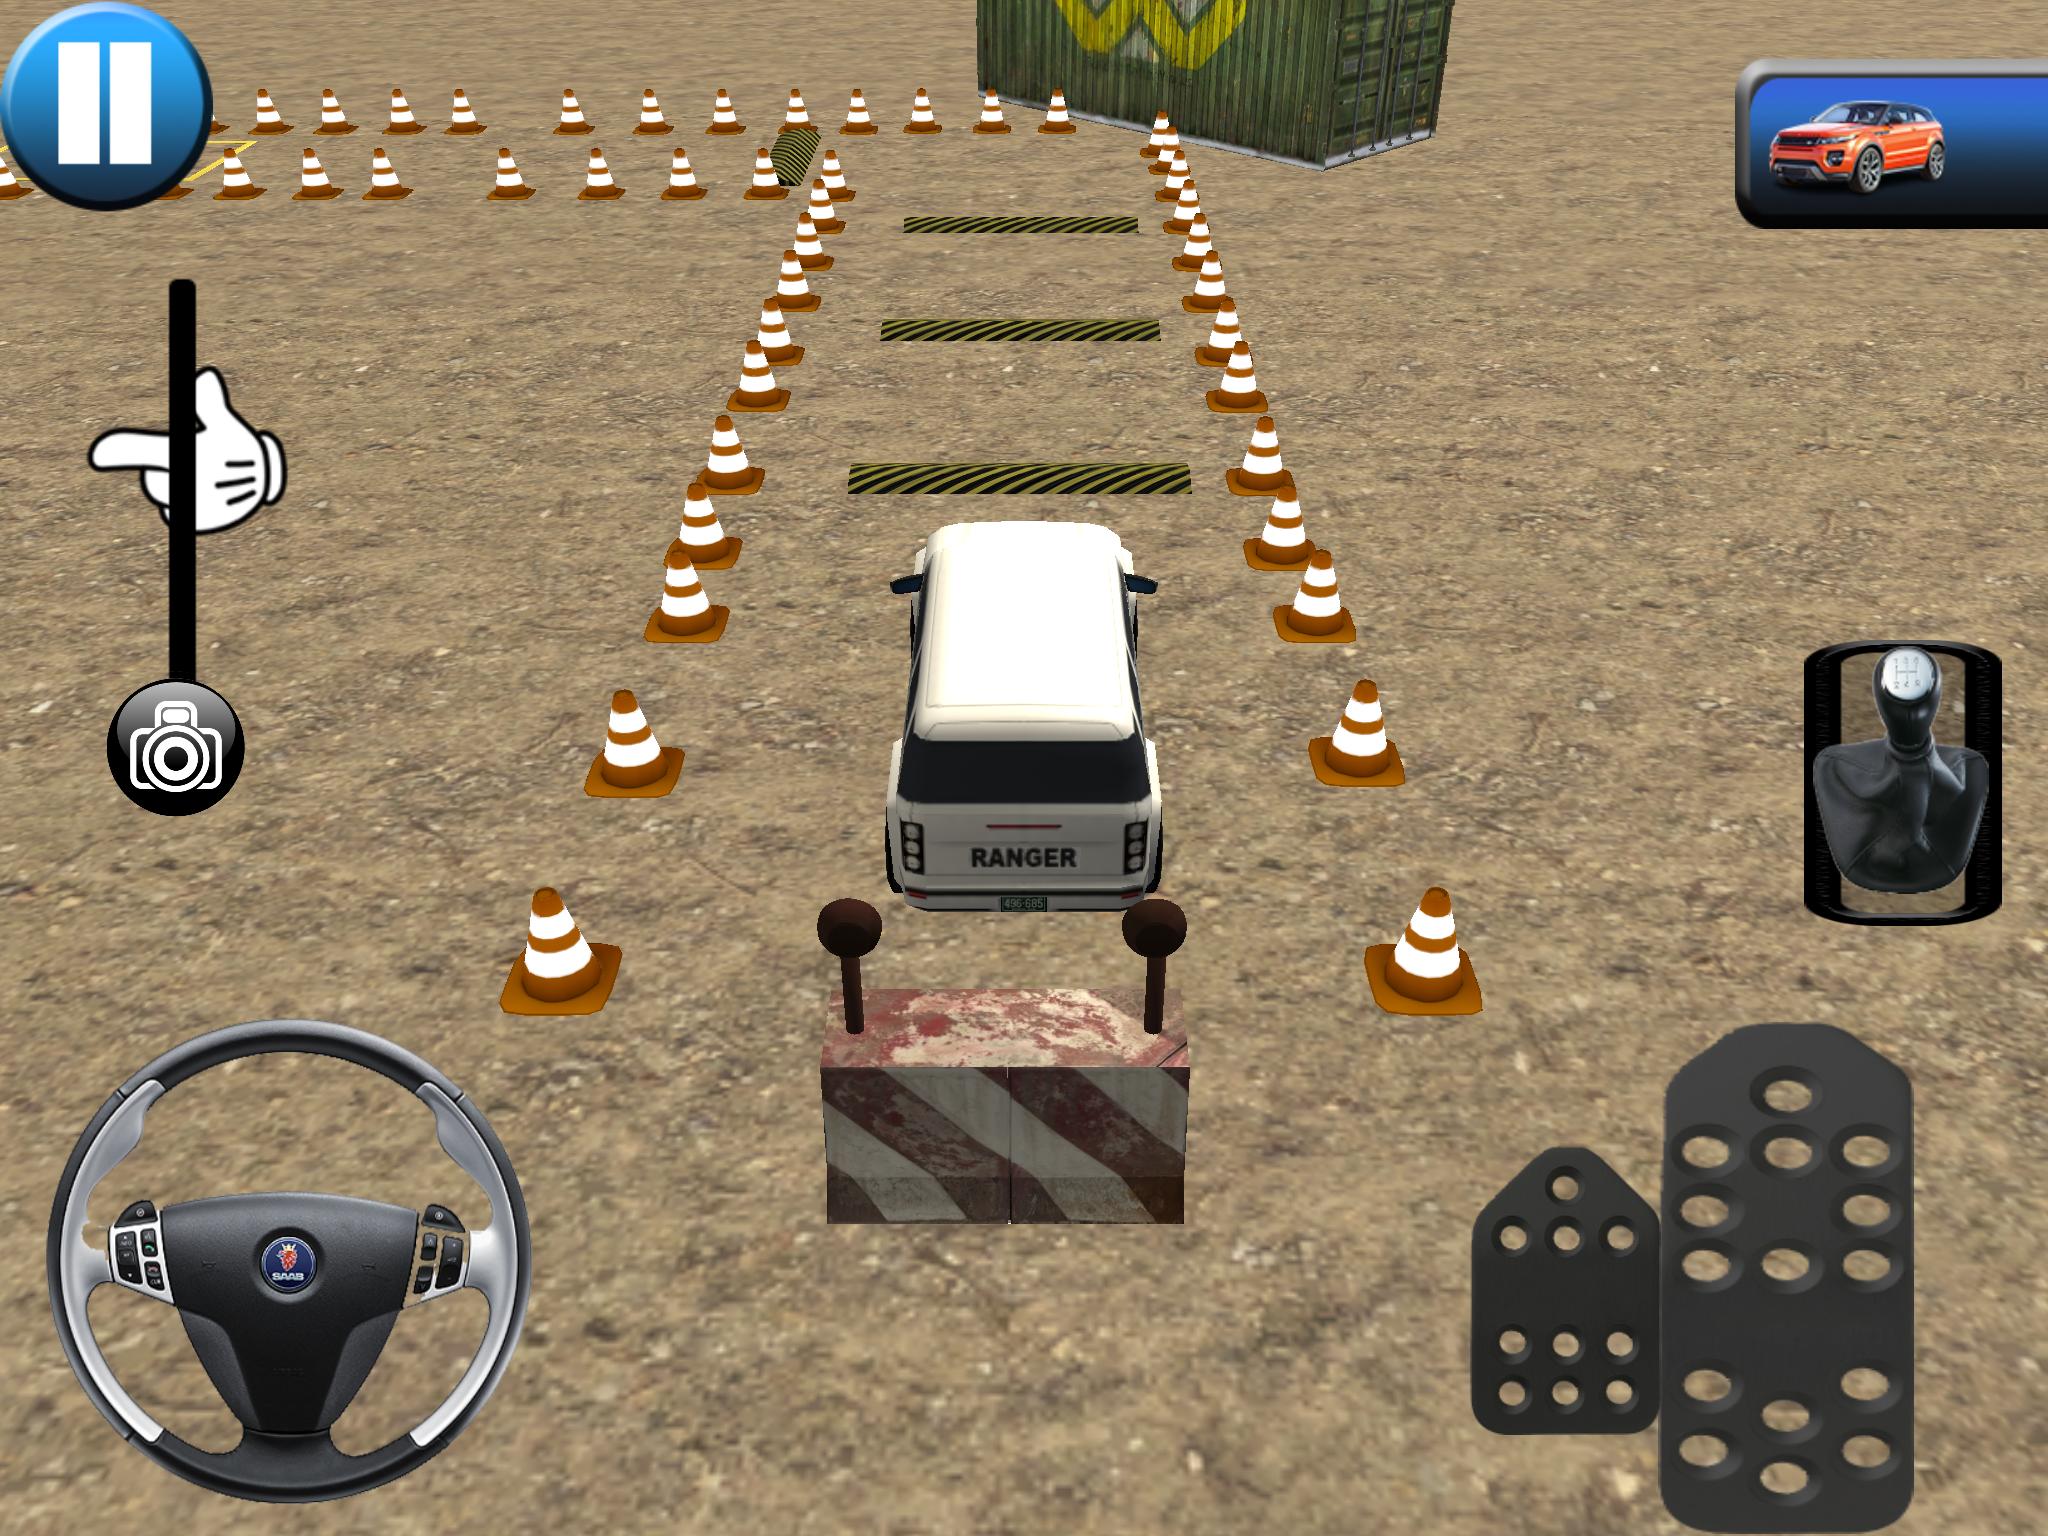 لعبة تعليم القيادة و مواقف السيارات for Android - APK Download